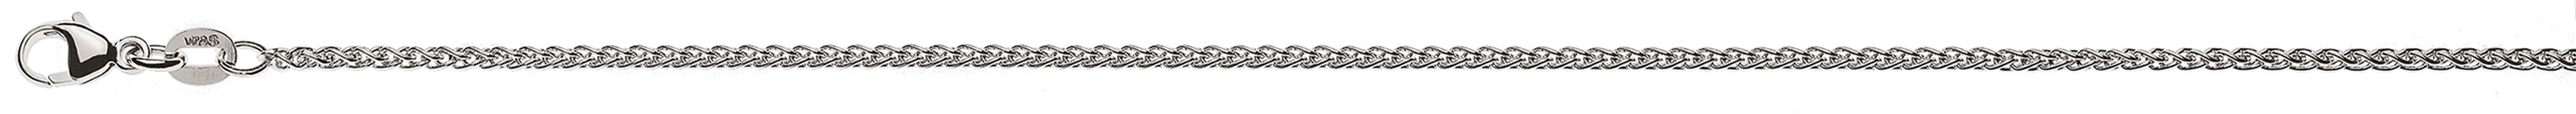 AURONOS Élégance Necklace white gold 14K cable chain 45cm 1.65mm